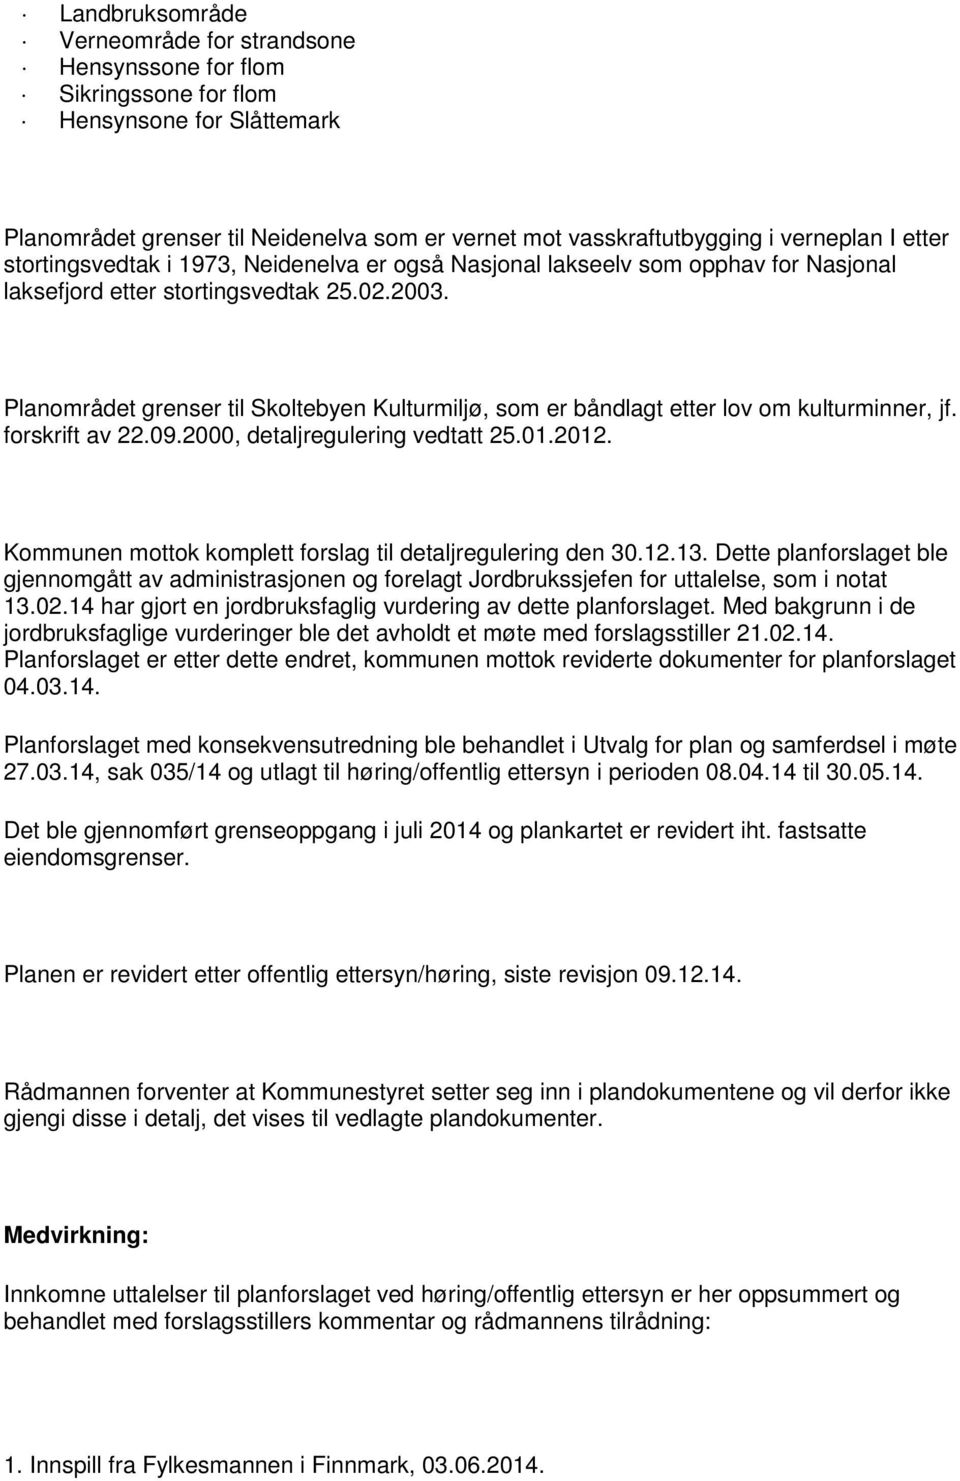 Planområdet grenser til Skoltebyen Kulturmiljø, som er båndlagt etter lov om kulturminner, jf. forskrift av 22.09.2000, detaljregulering vedtatt 25.01.2012.